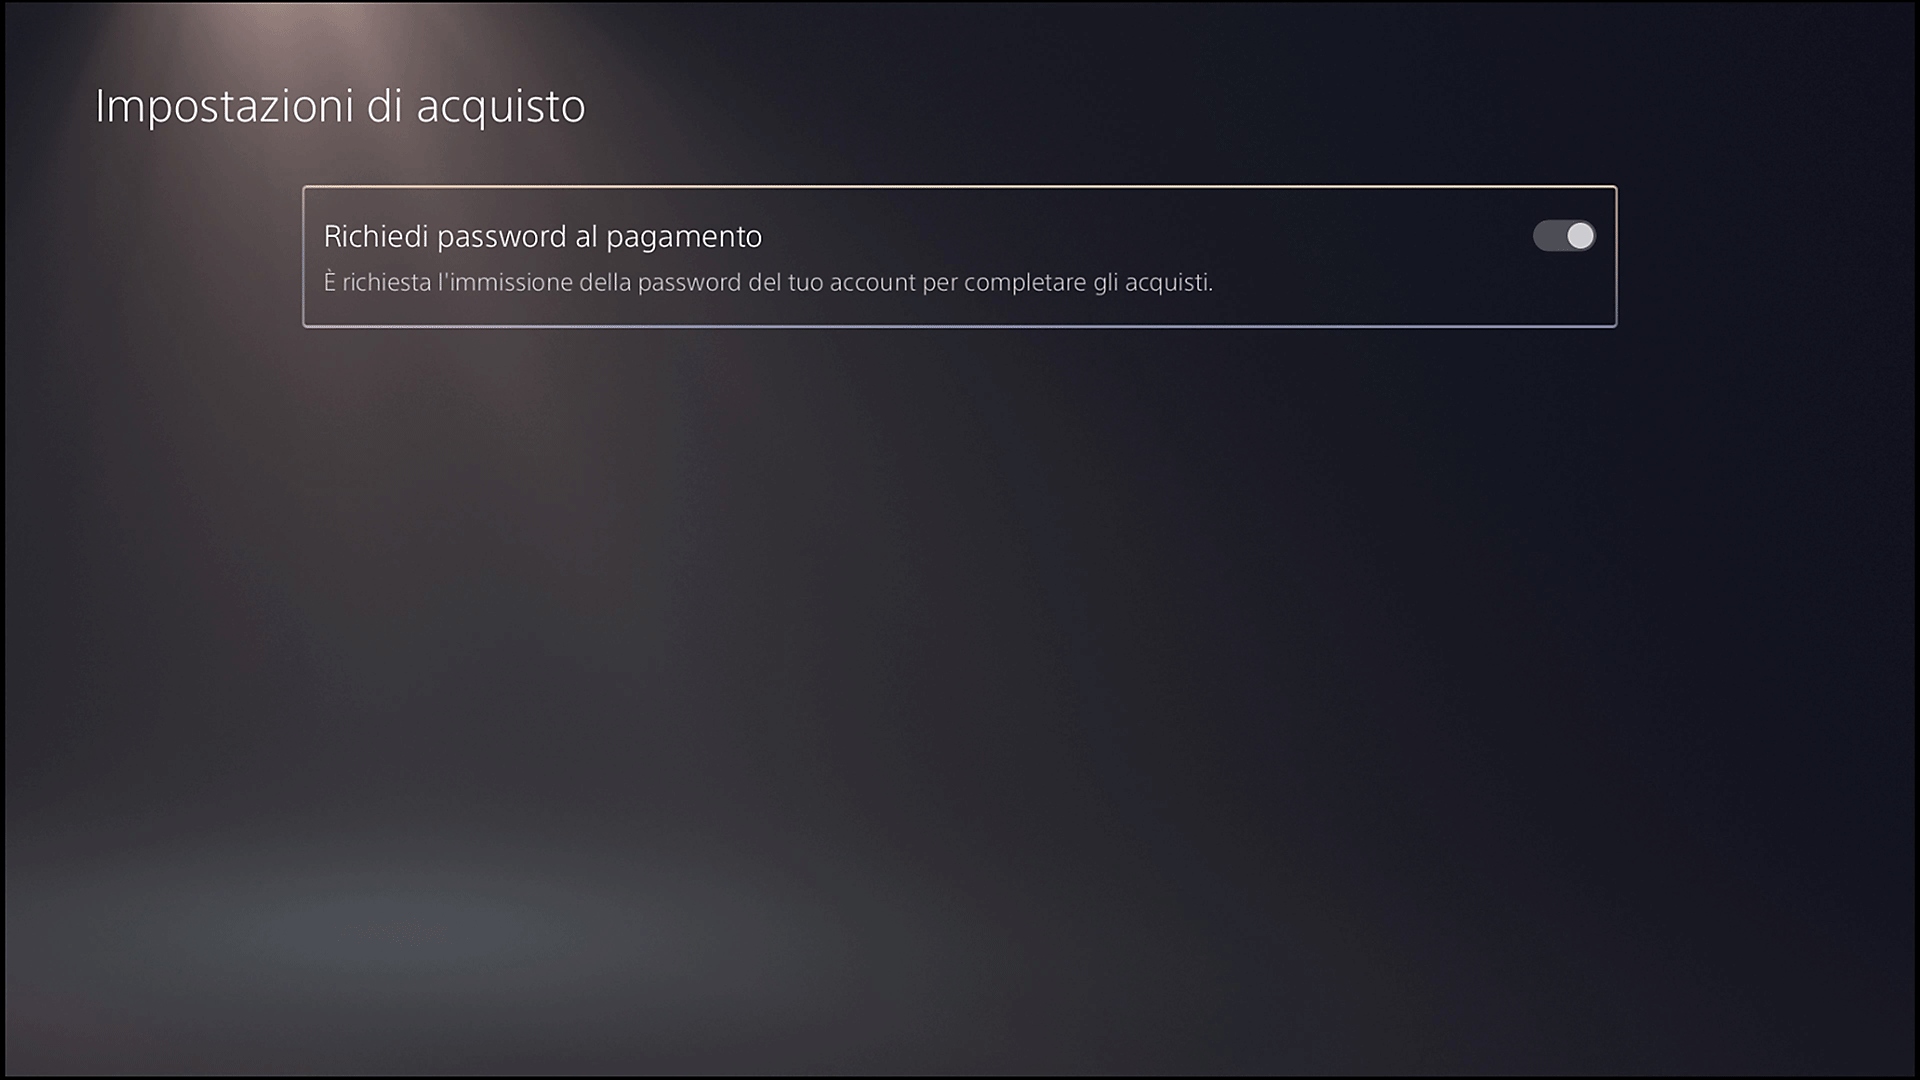 Schermata Impostazioni di acquisto di PS5 con opzione Richiedi password al pagamento